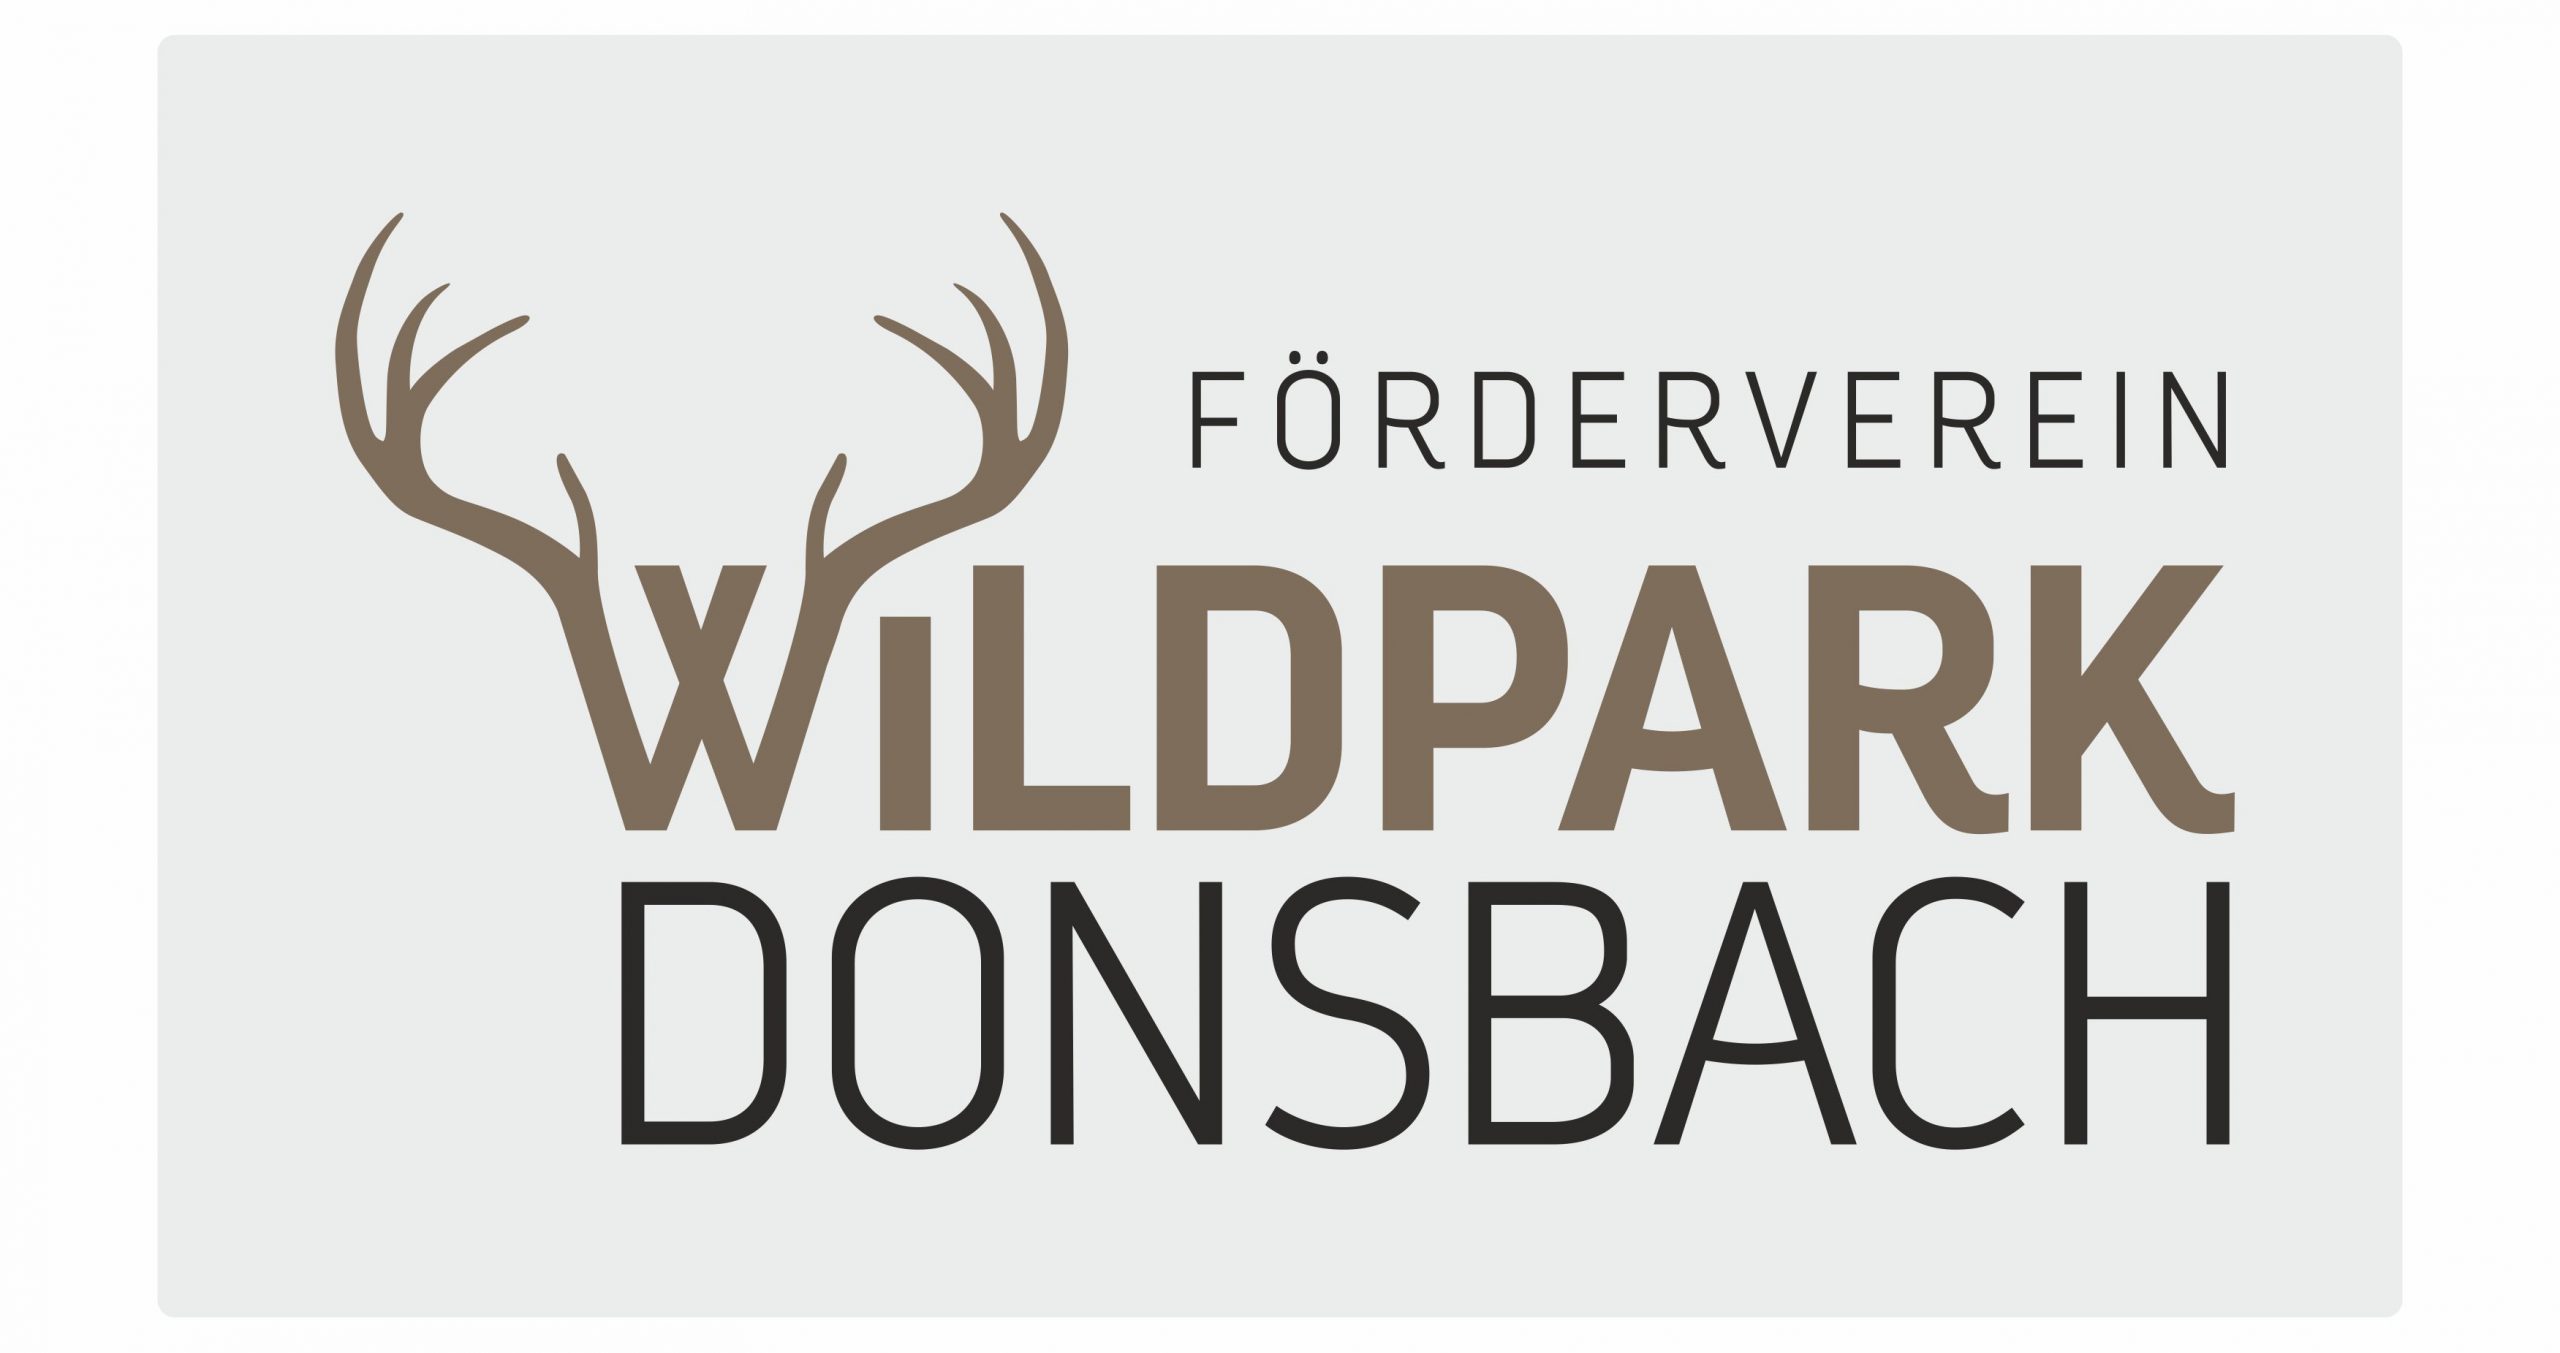 Logo des Fördervereins Wildpark. Das Logo zeigt die Worte "Förderverein Wildpark Donsbach". Das "W" von Wildpark ist wie ein Hirschgeweih gestaltet.